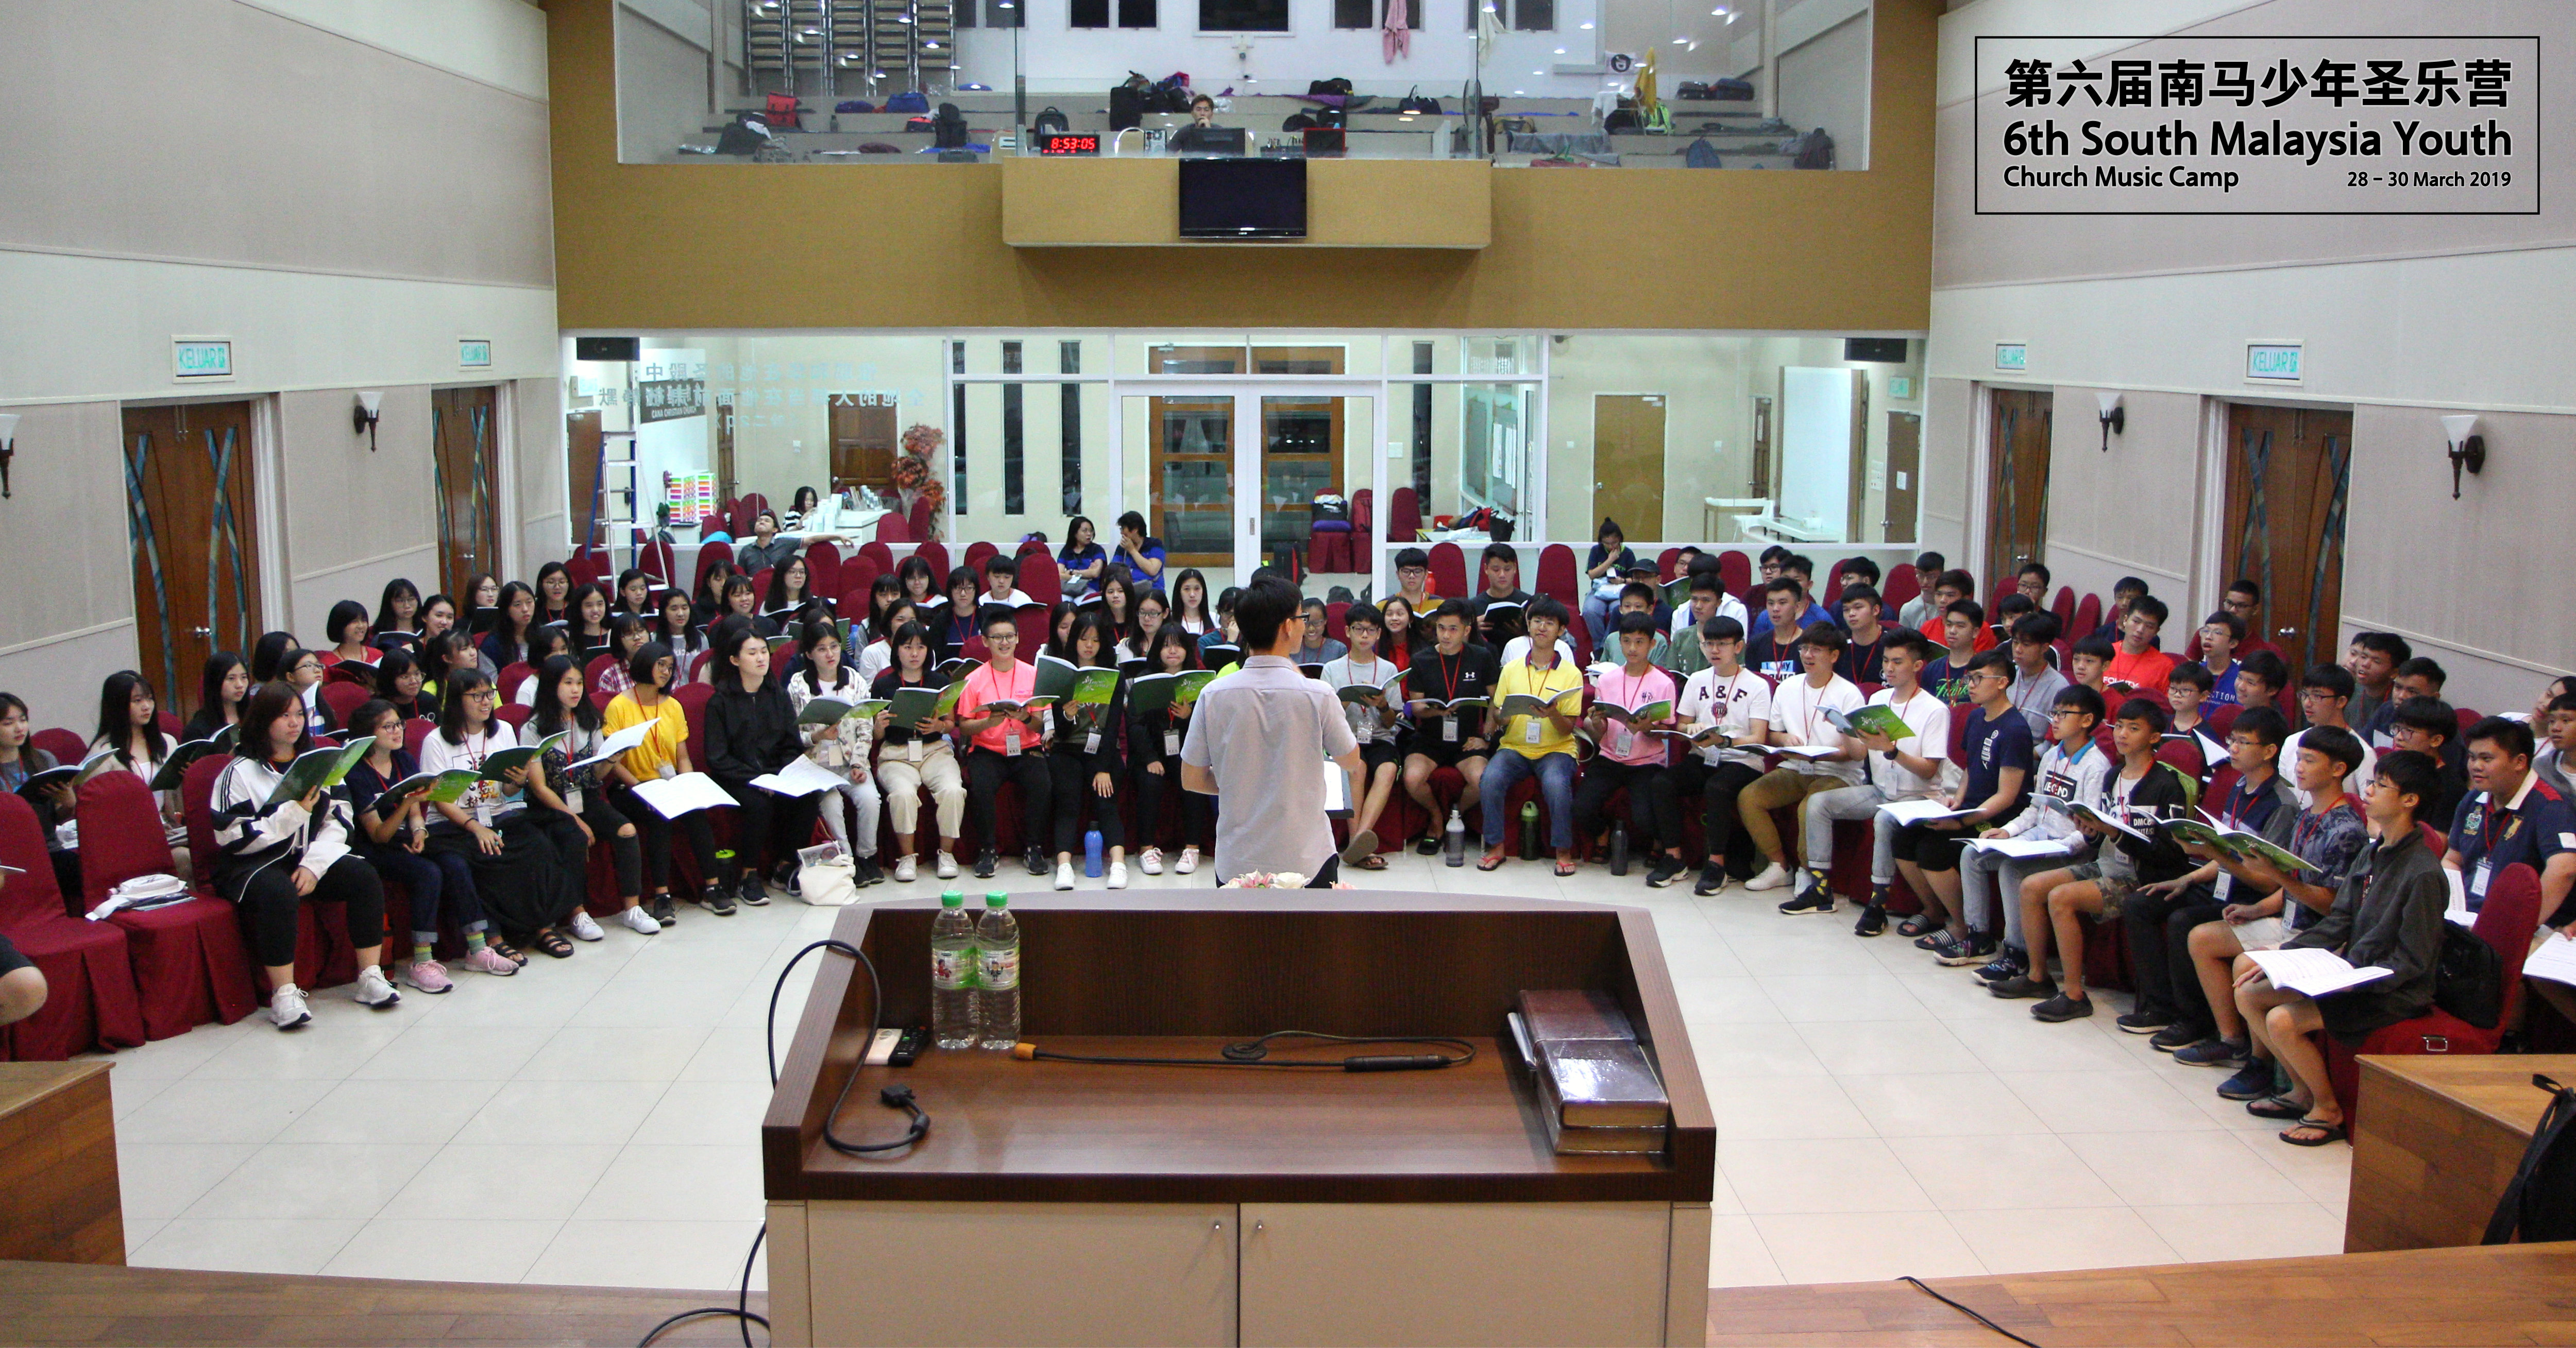 马来西亚 第六届南马少年圣乐营 6th South Malaysia Youth Church Music Camp A00-001